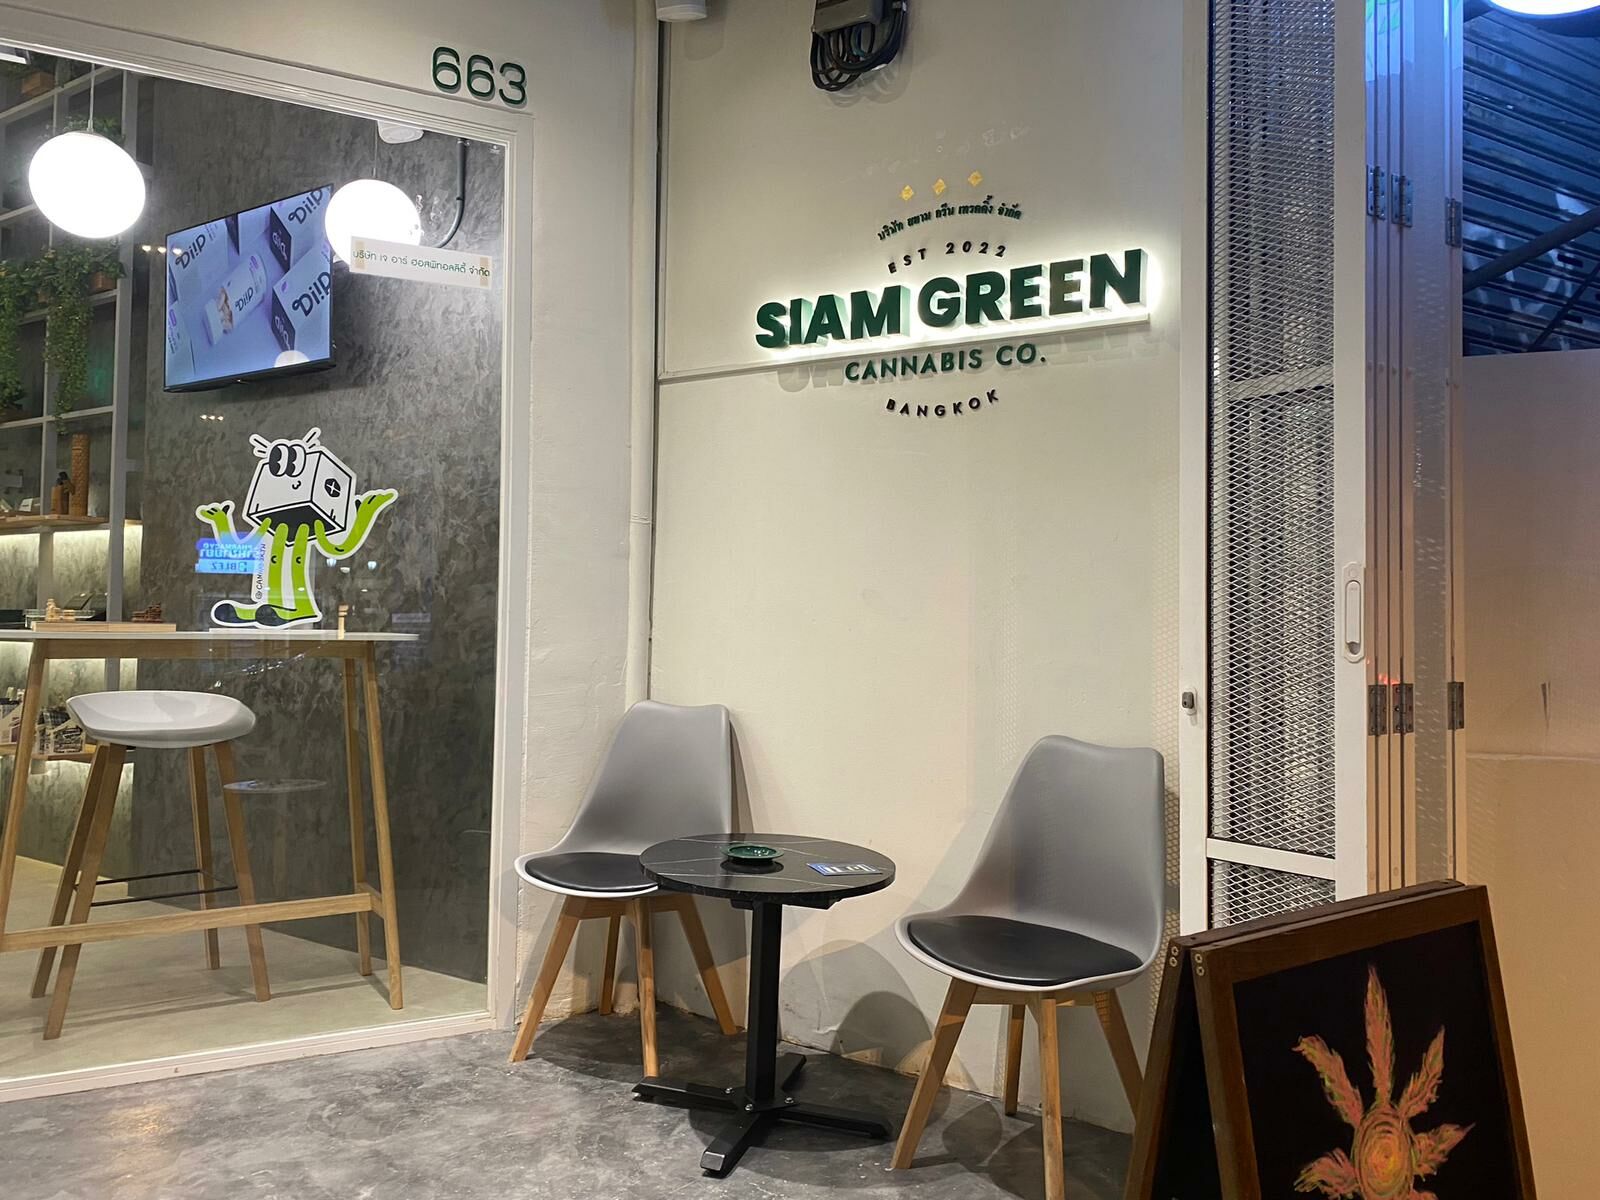 בצע בחירות חכמות יותר עם Siam Green Cannabis Co., המקום המועדף עליך עבור קנאביס ו-CBD - חיבור לתוכנית מריחואנה רפואית